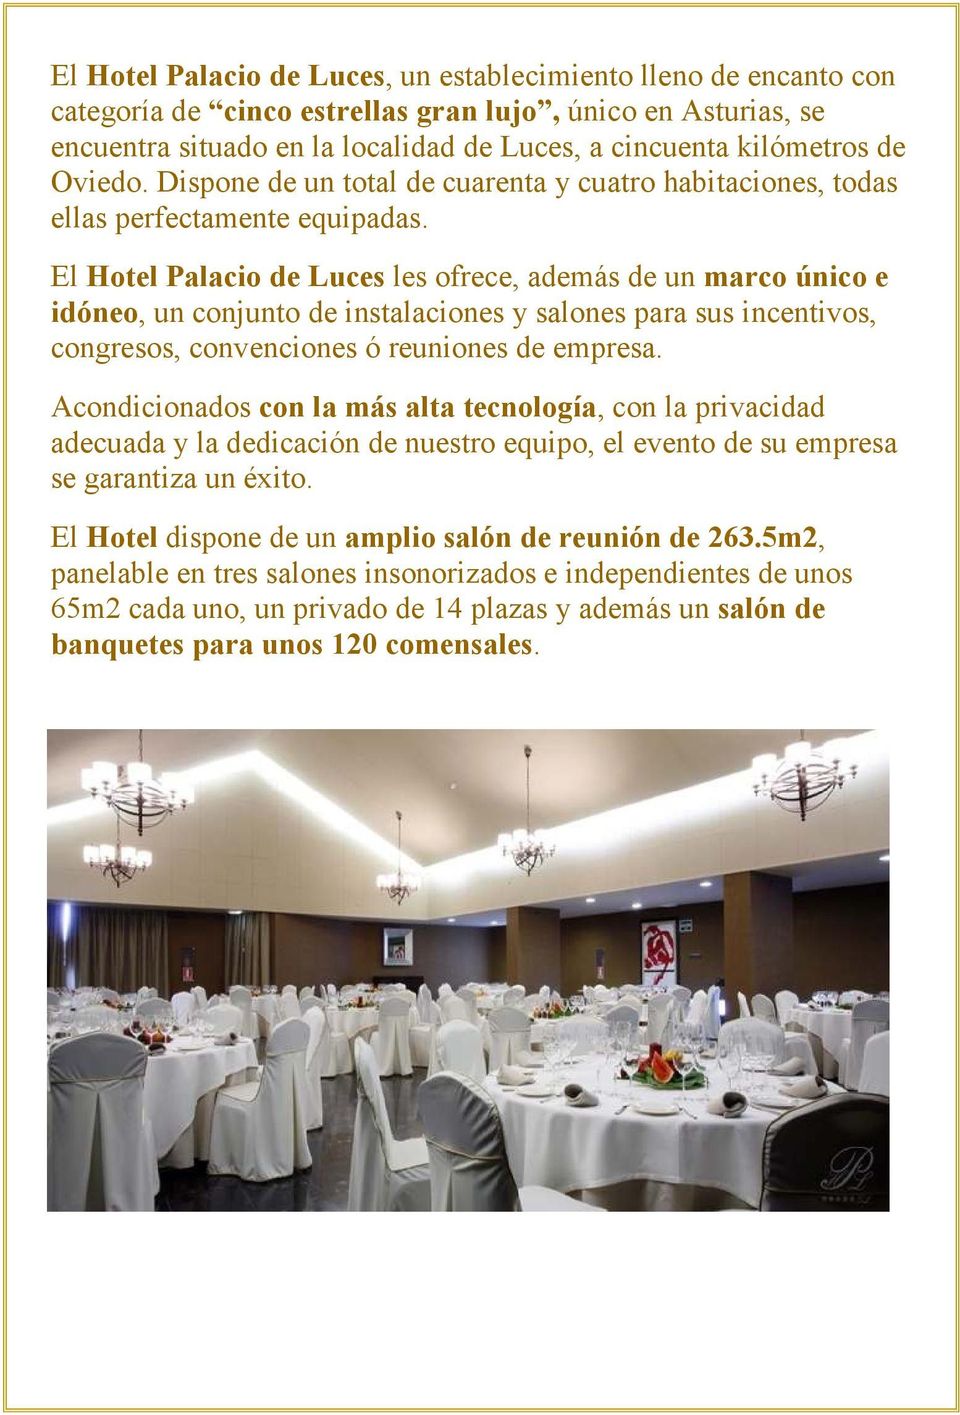 El Hotel Palacio de Luces les ofrece, además de un marco único e idóneo, un conjunto de instalaciones y salones para sus incentivos, congresos, convenciones ó reuniones de empresa.